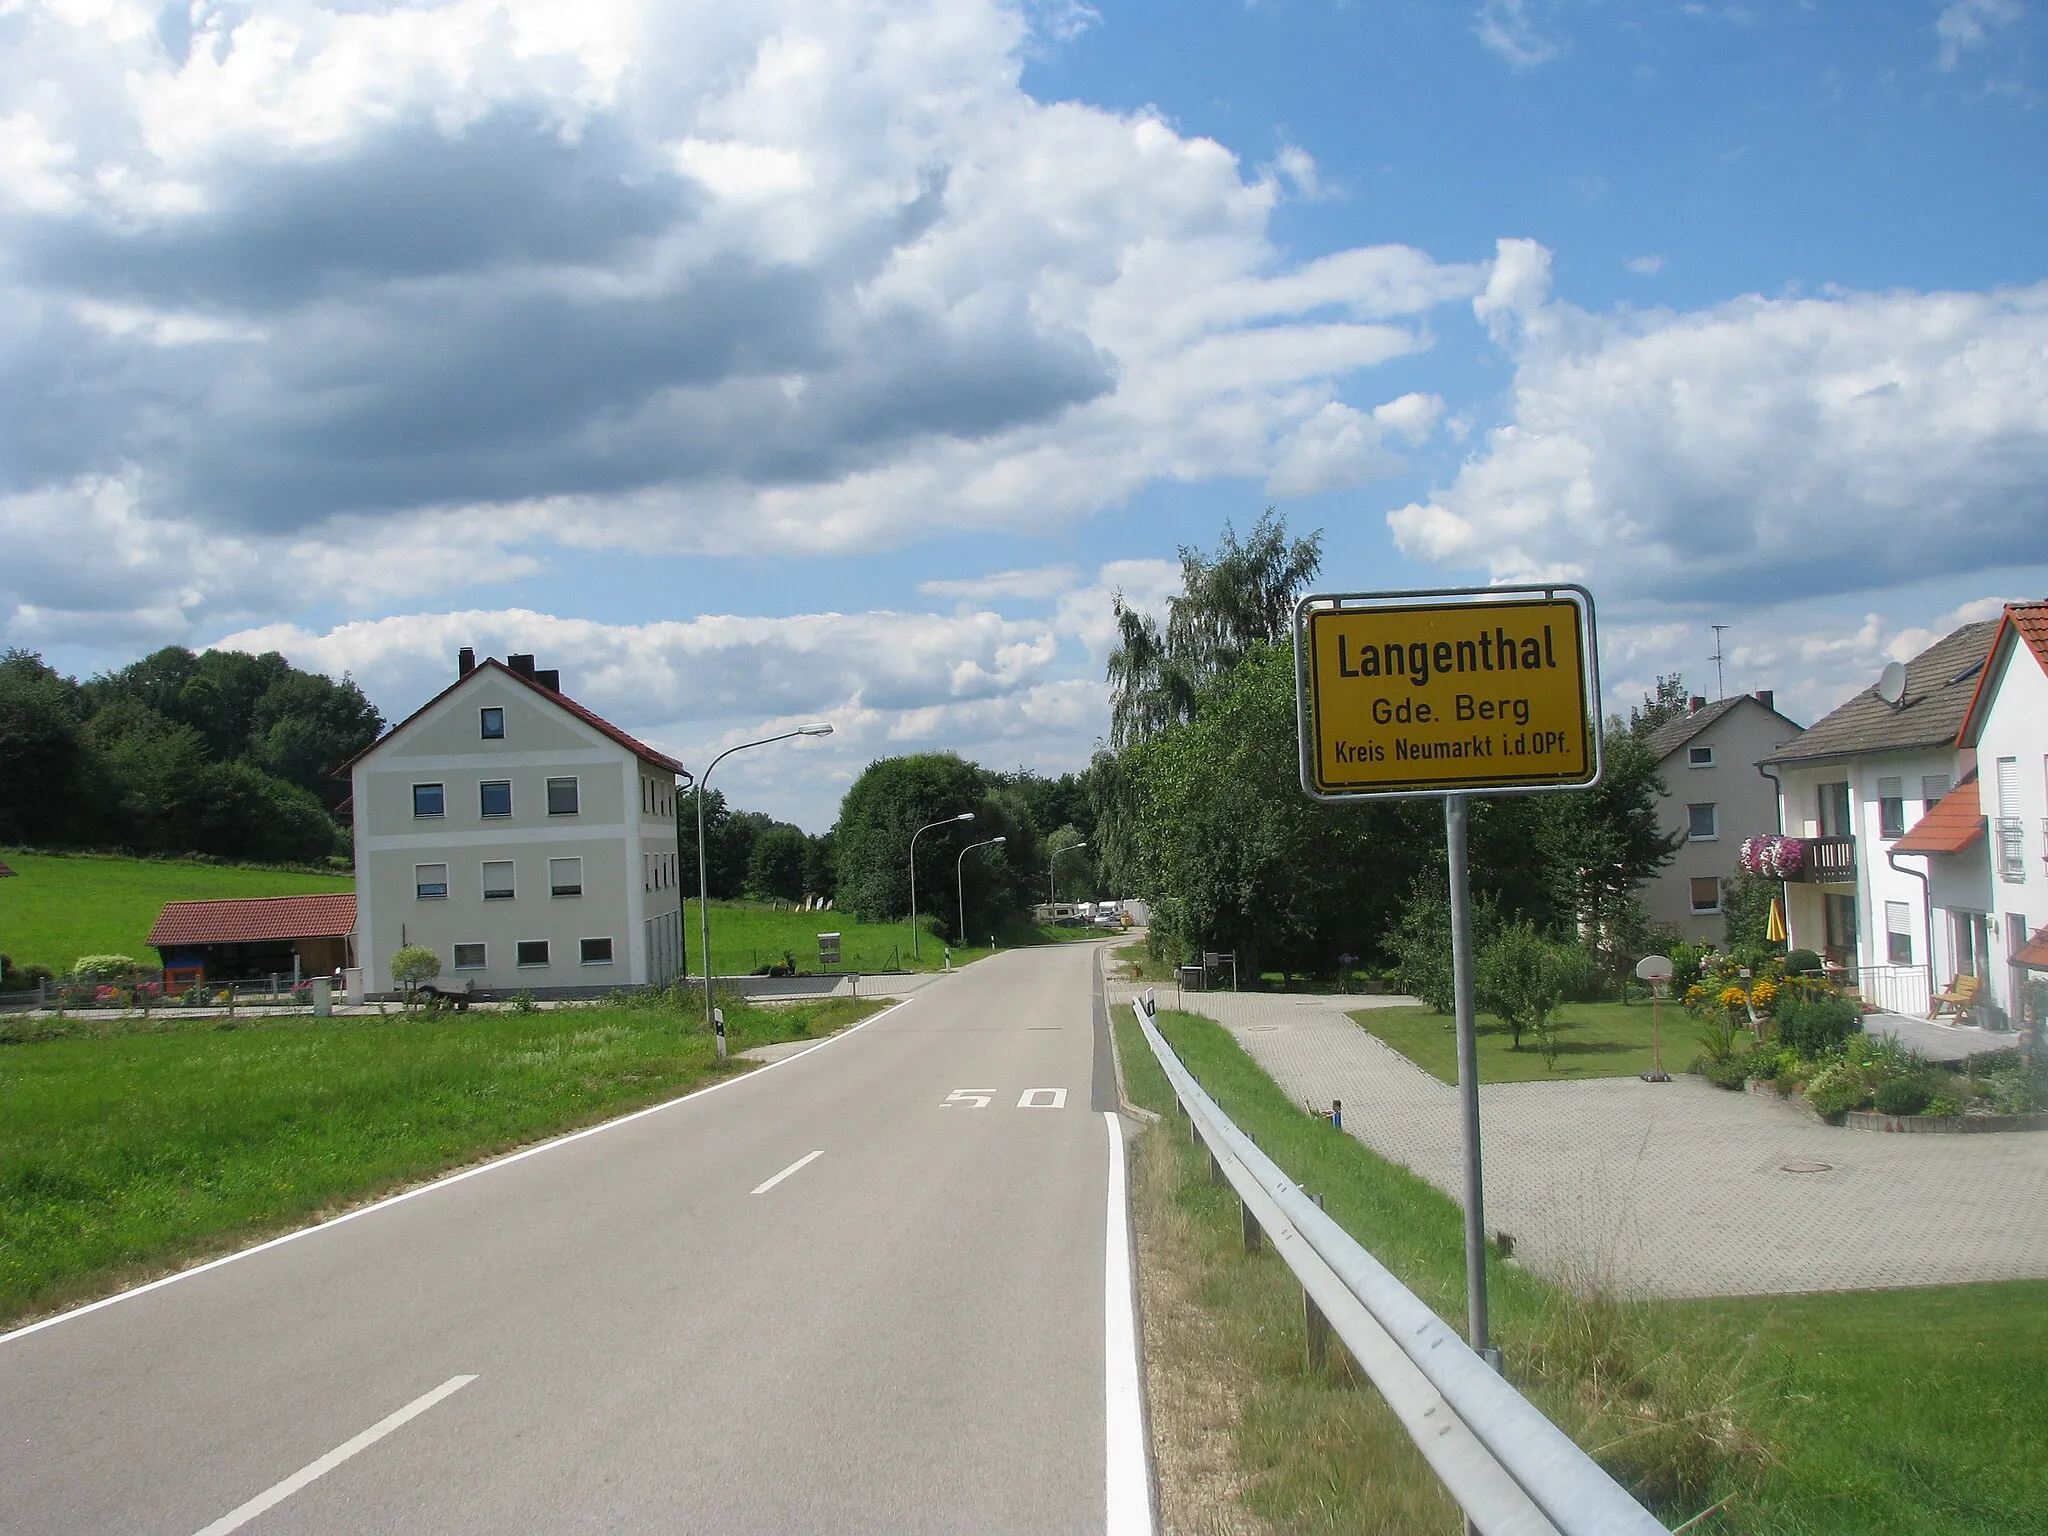 Photo showing: Langenthal, Ortsteil von Berg bei Neumarkt in der Oberpfalz